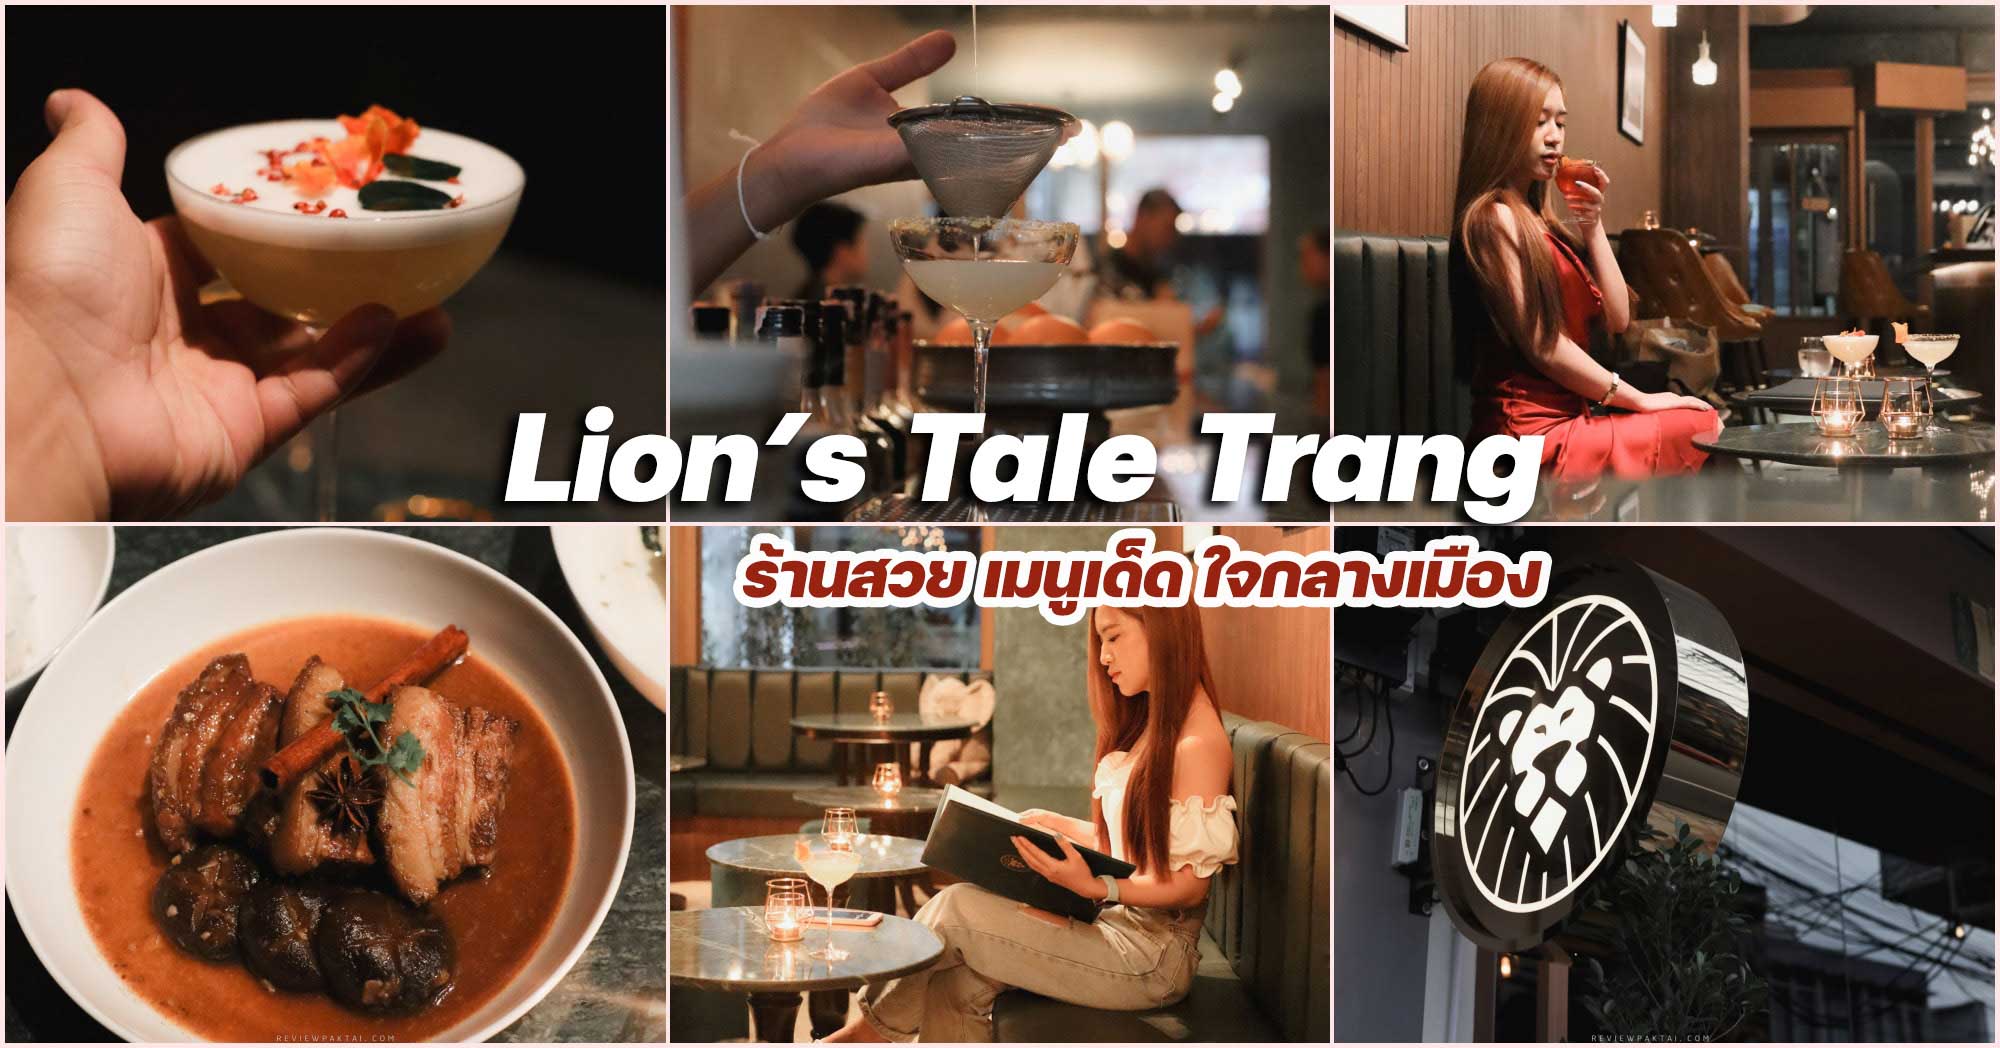 Lion's Tale Trang ร้านดังตรังที่เมนูไม่เหมือนใคร ไลอ้อนเทลล์ ร้านสวยมวากกนั่งชิวๆใจกลางเมือง